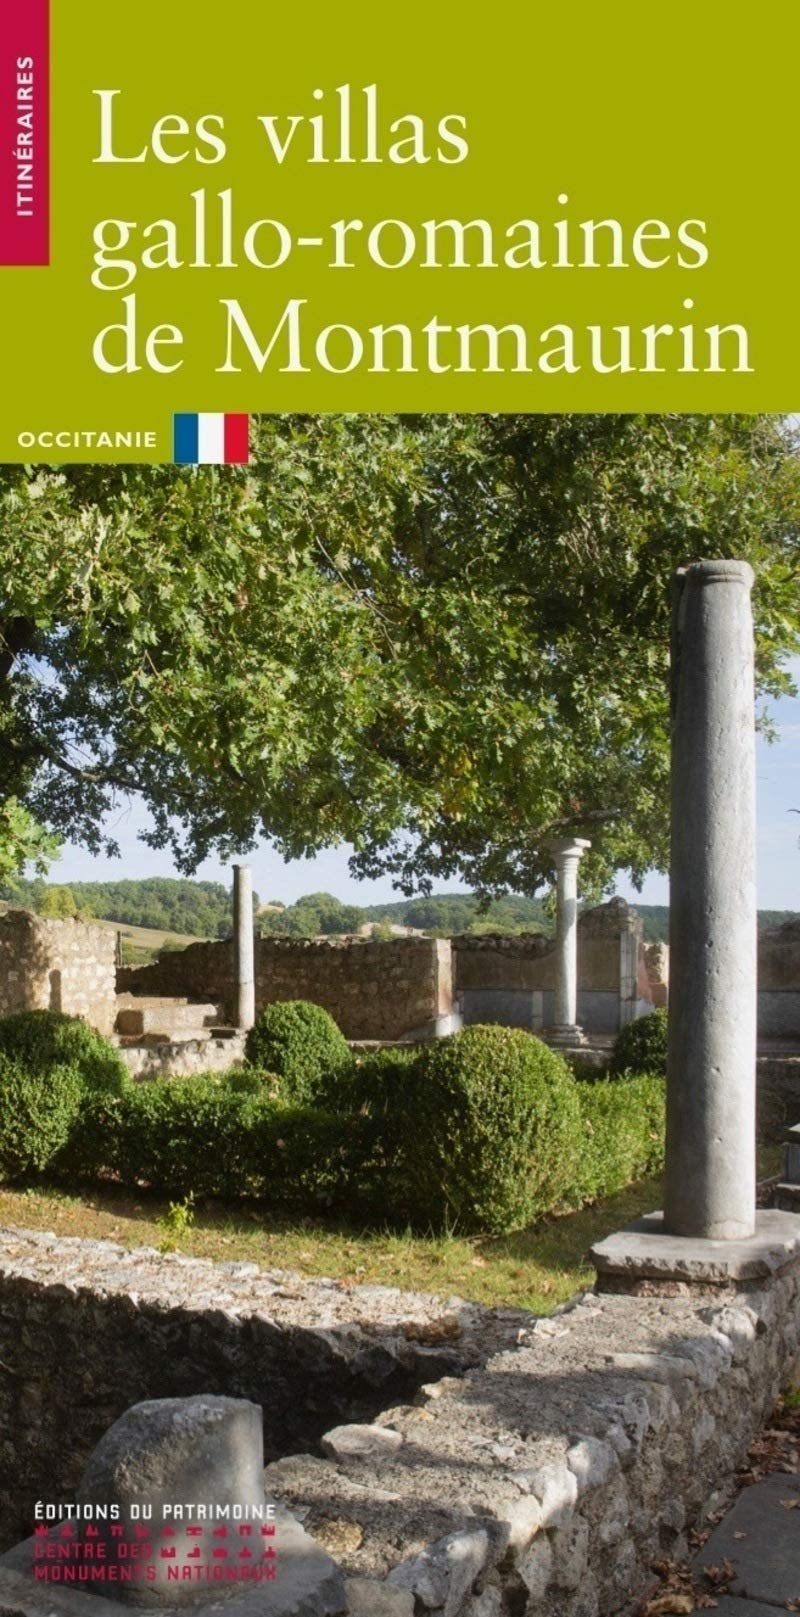 Les villas gallo-romaines de Montmaurin, 2020, 61 p.